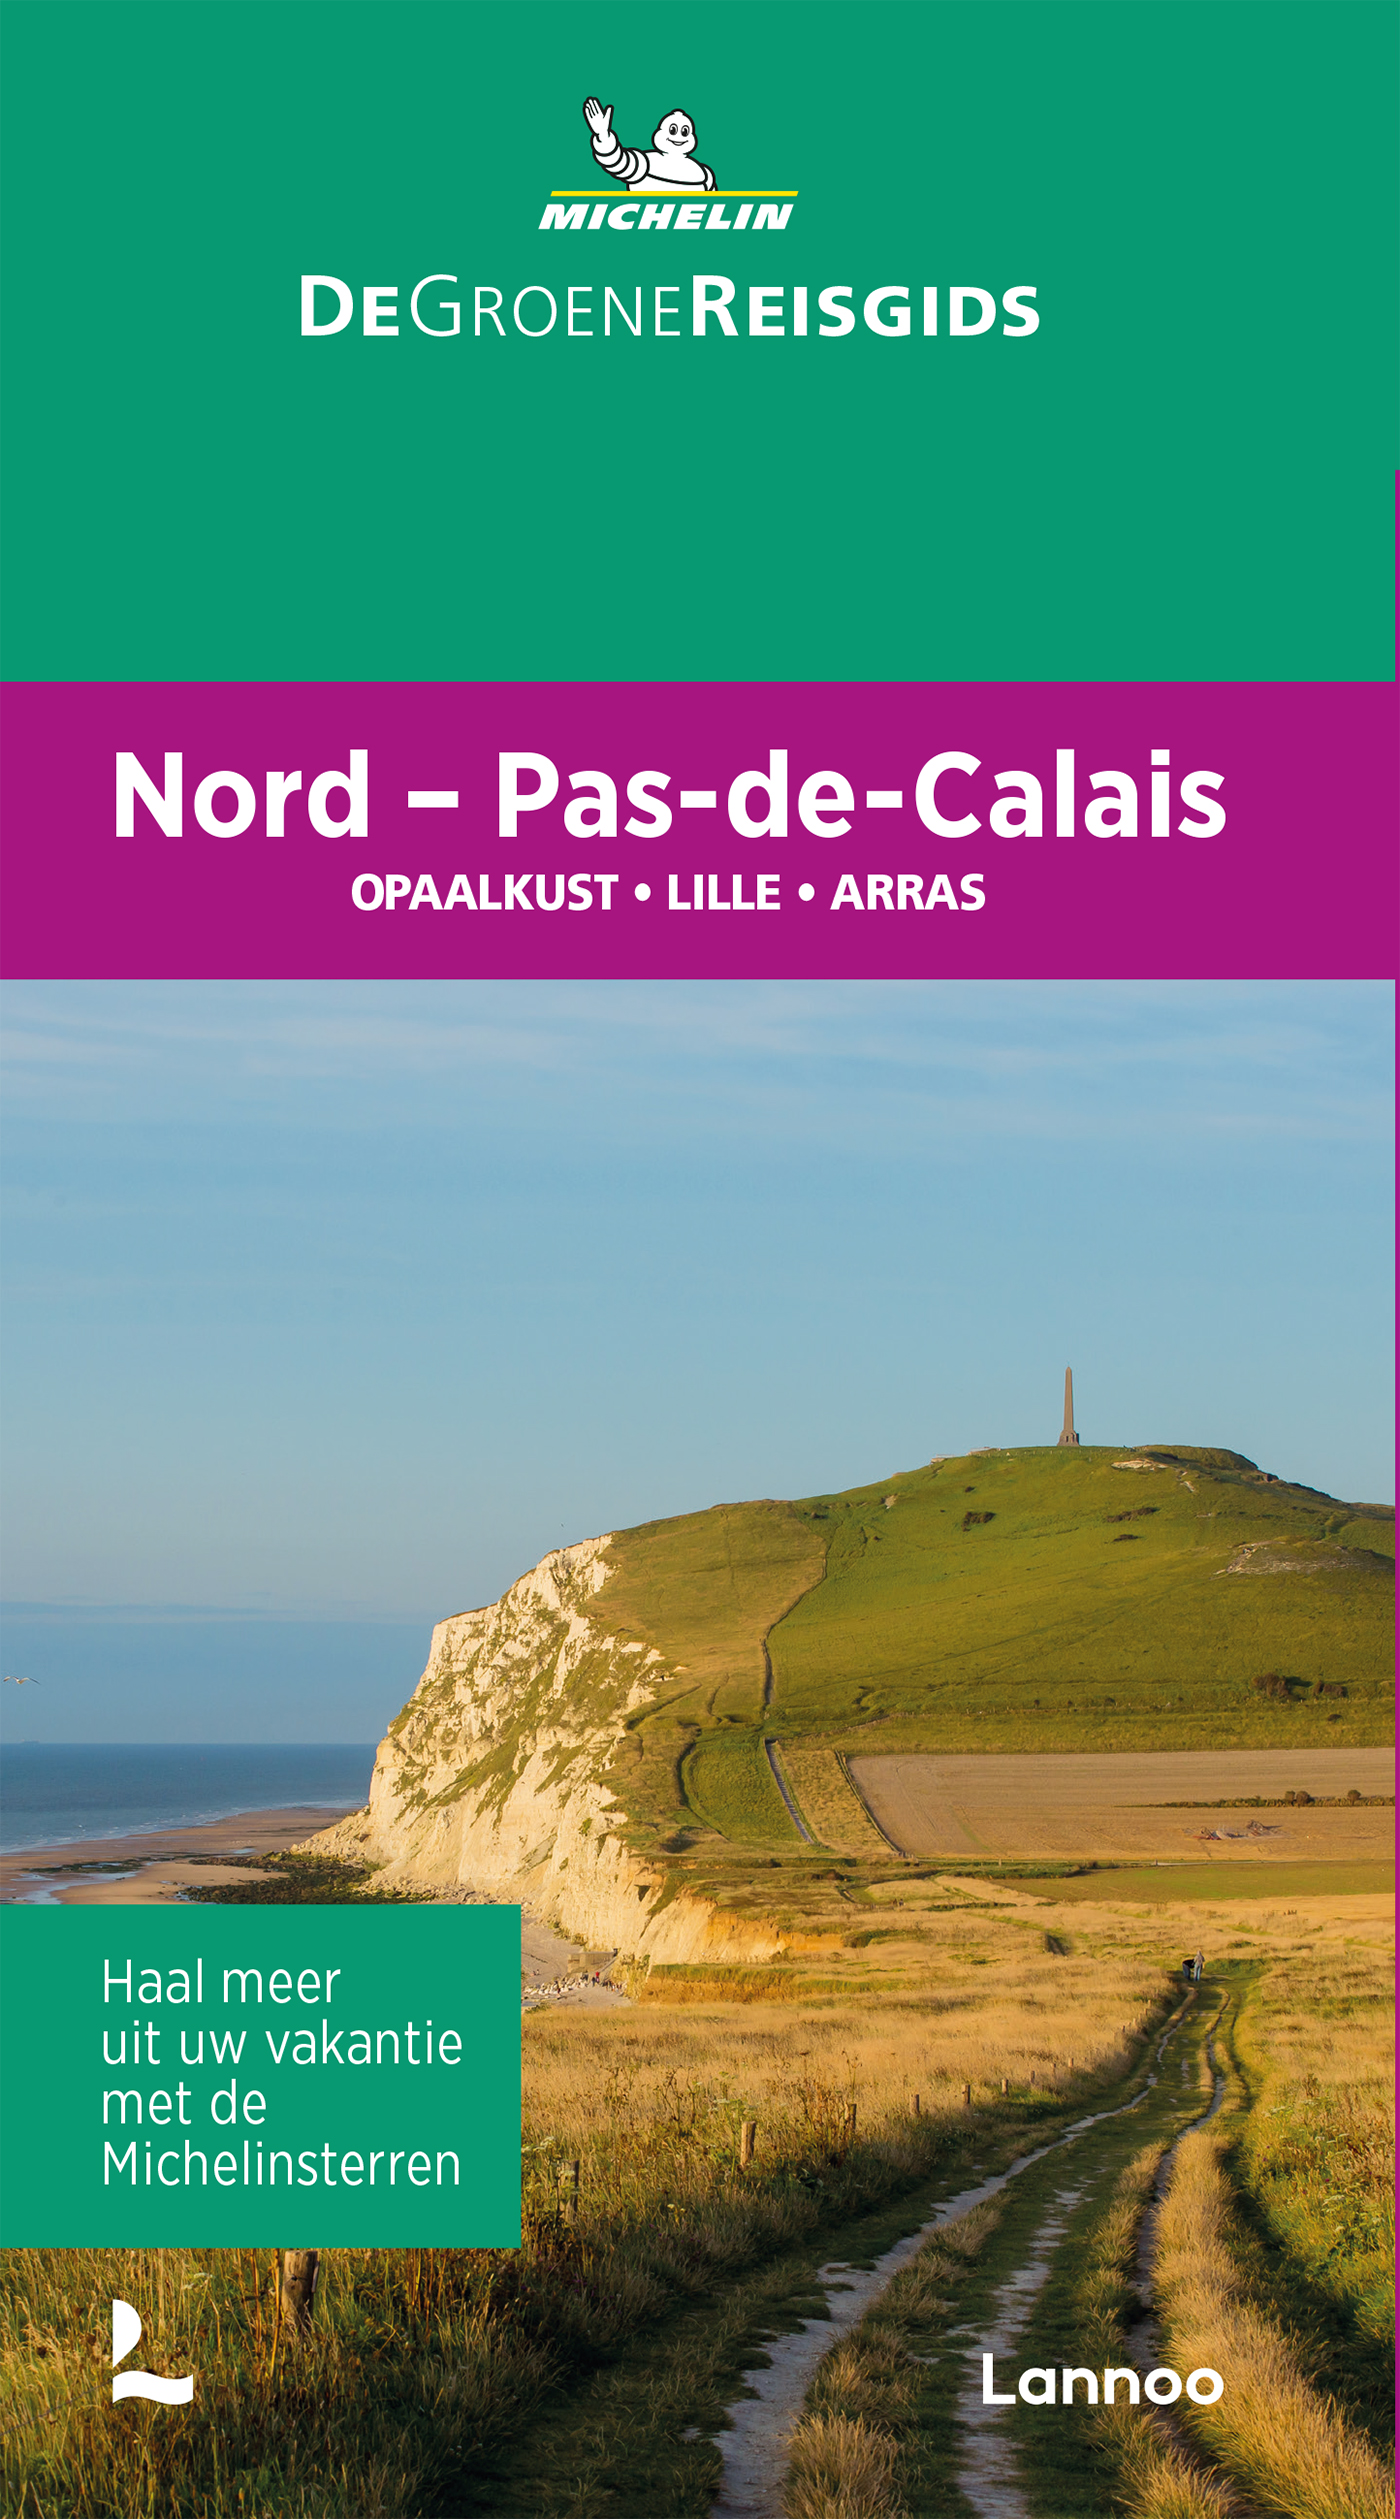 Online bestellen: Reisgids Michelin groene gids Nord/Pas-de-Calais | Lannoo